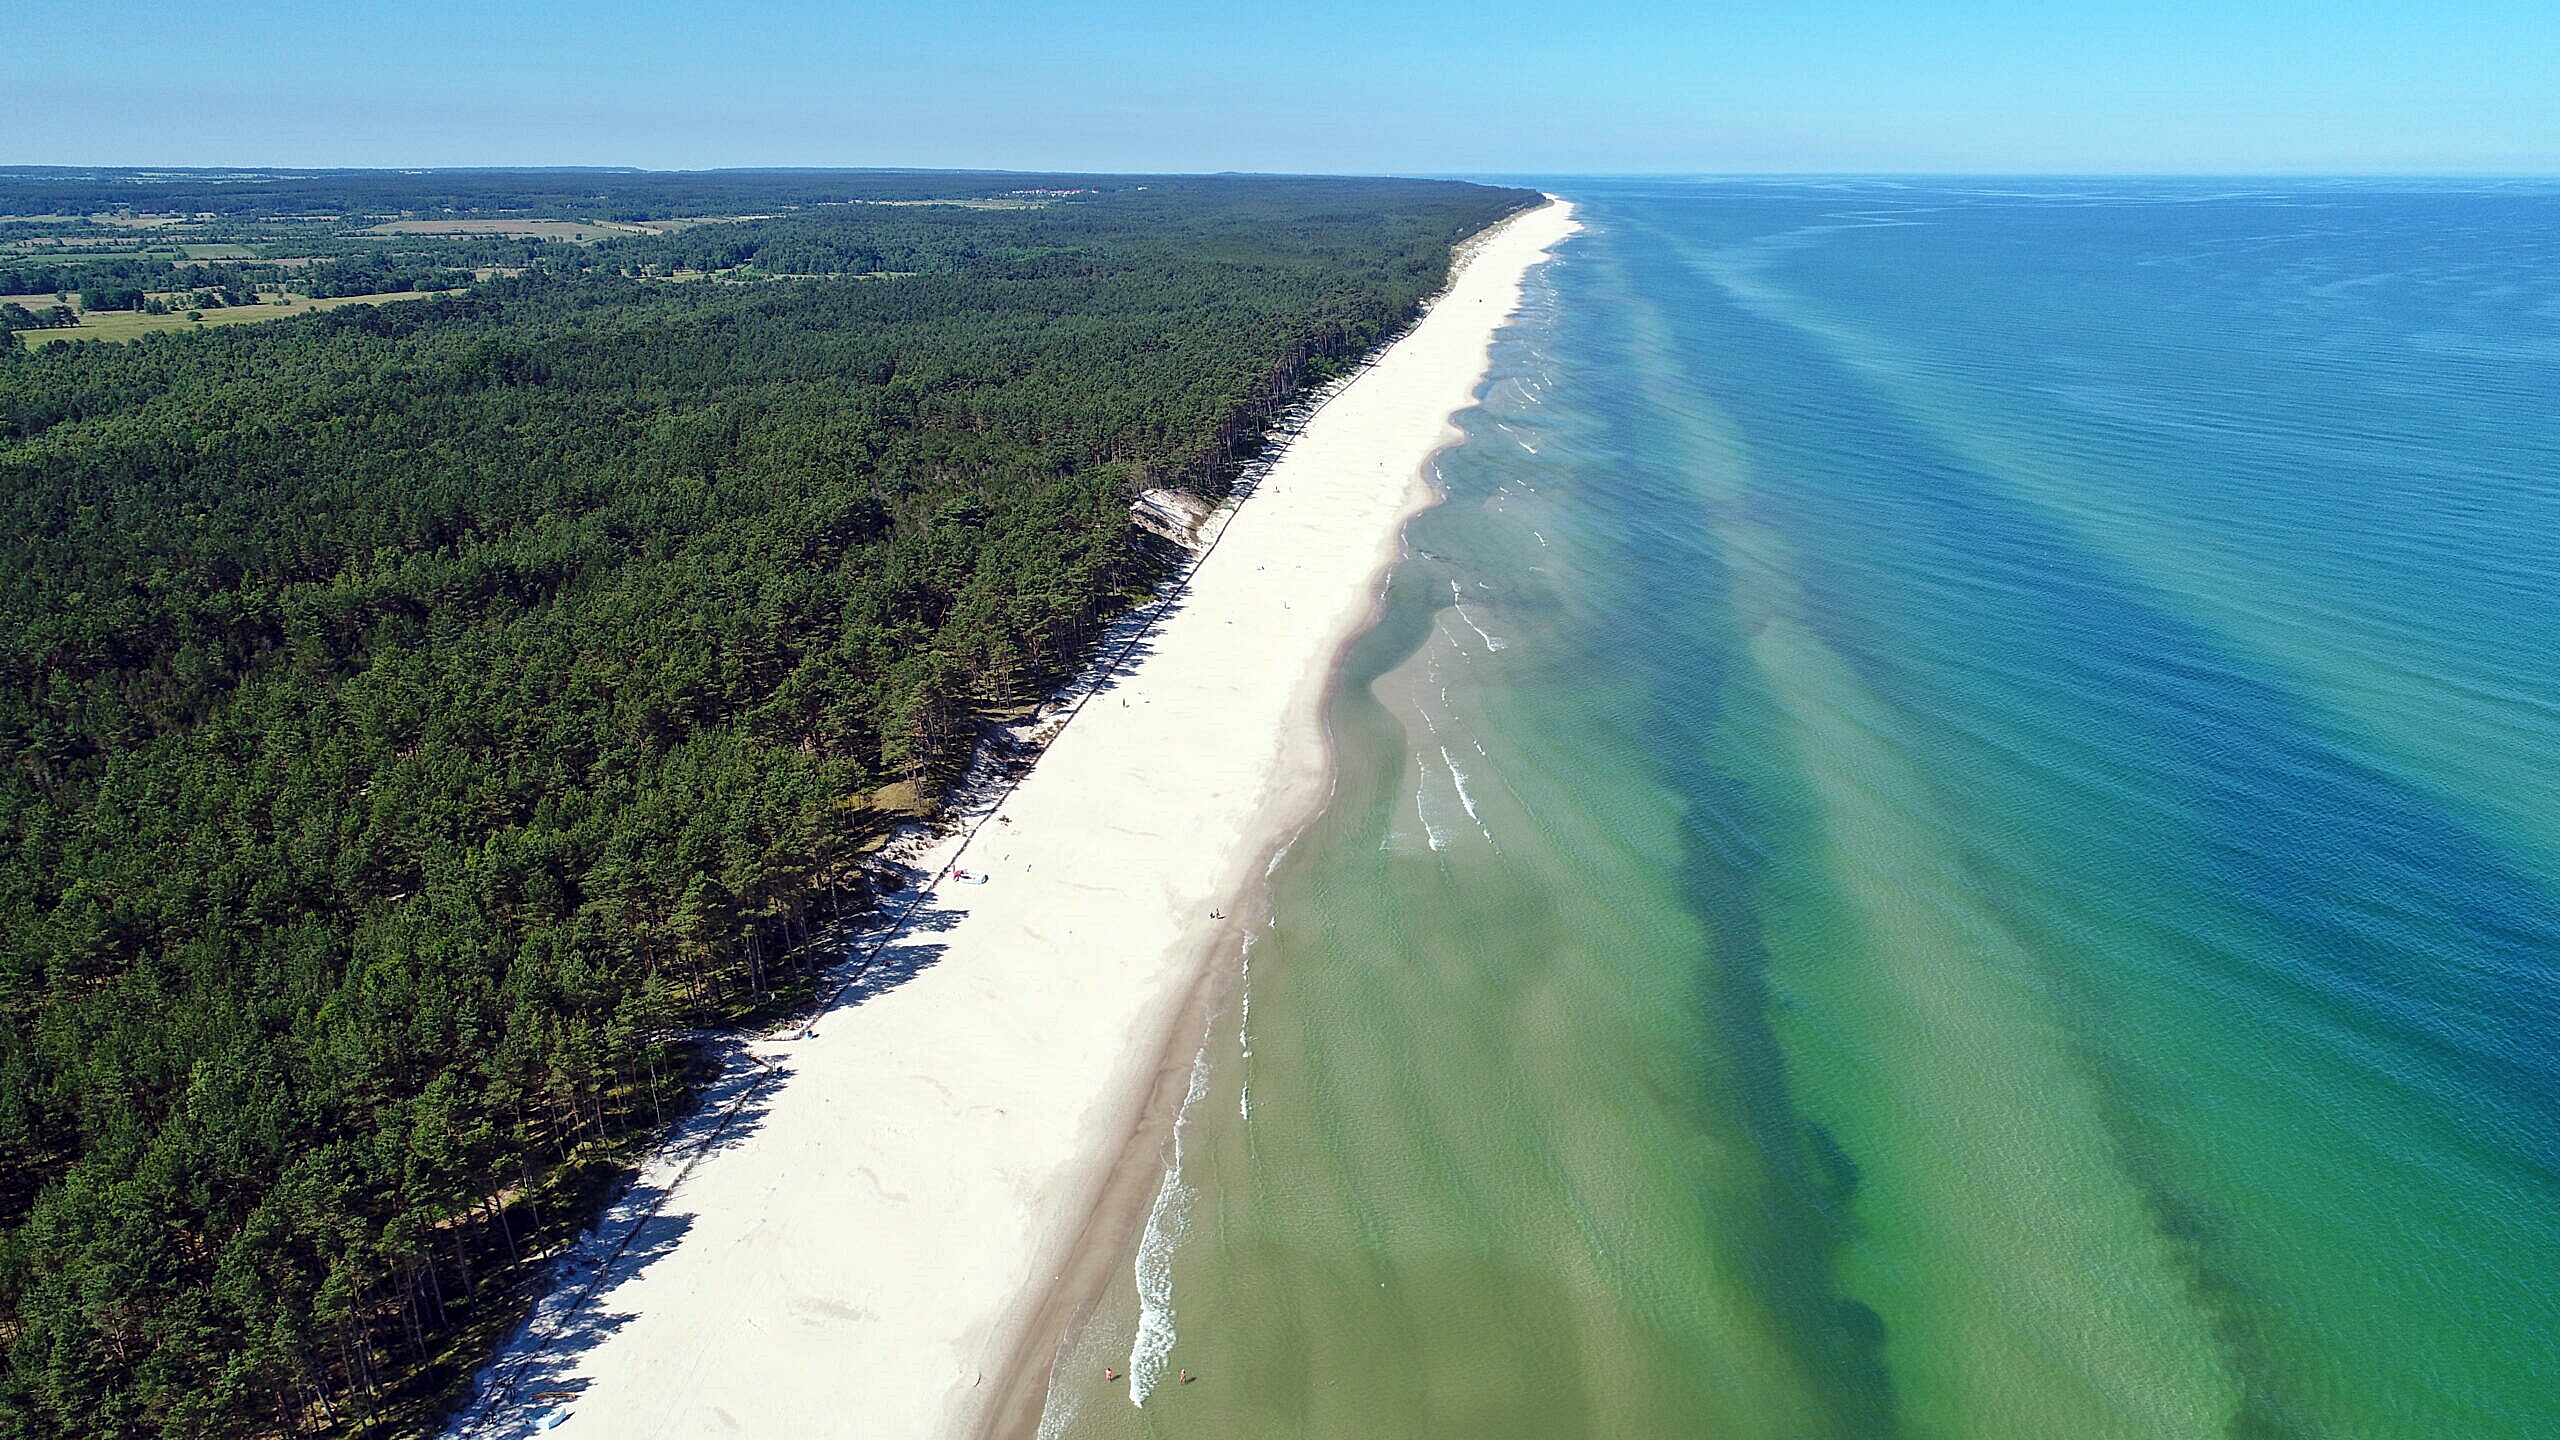 Urząd Morski w Gdyni  po raz drugi poszukuje wolontariuszy do współpracy przy edukowaniu w zakresie ochrony wydm i lasów nadmorskich